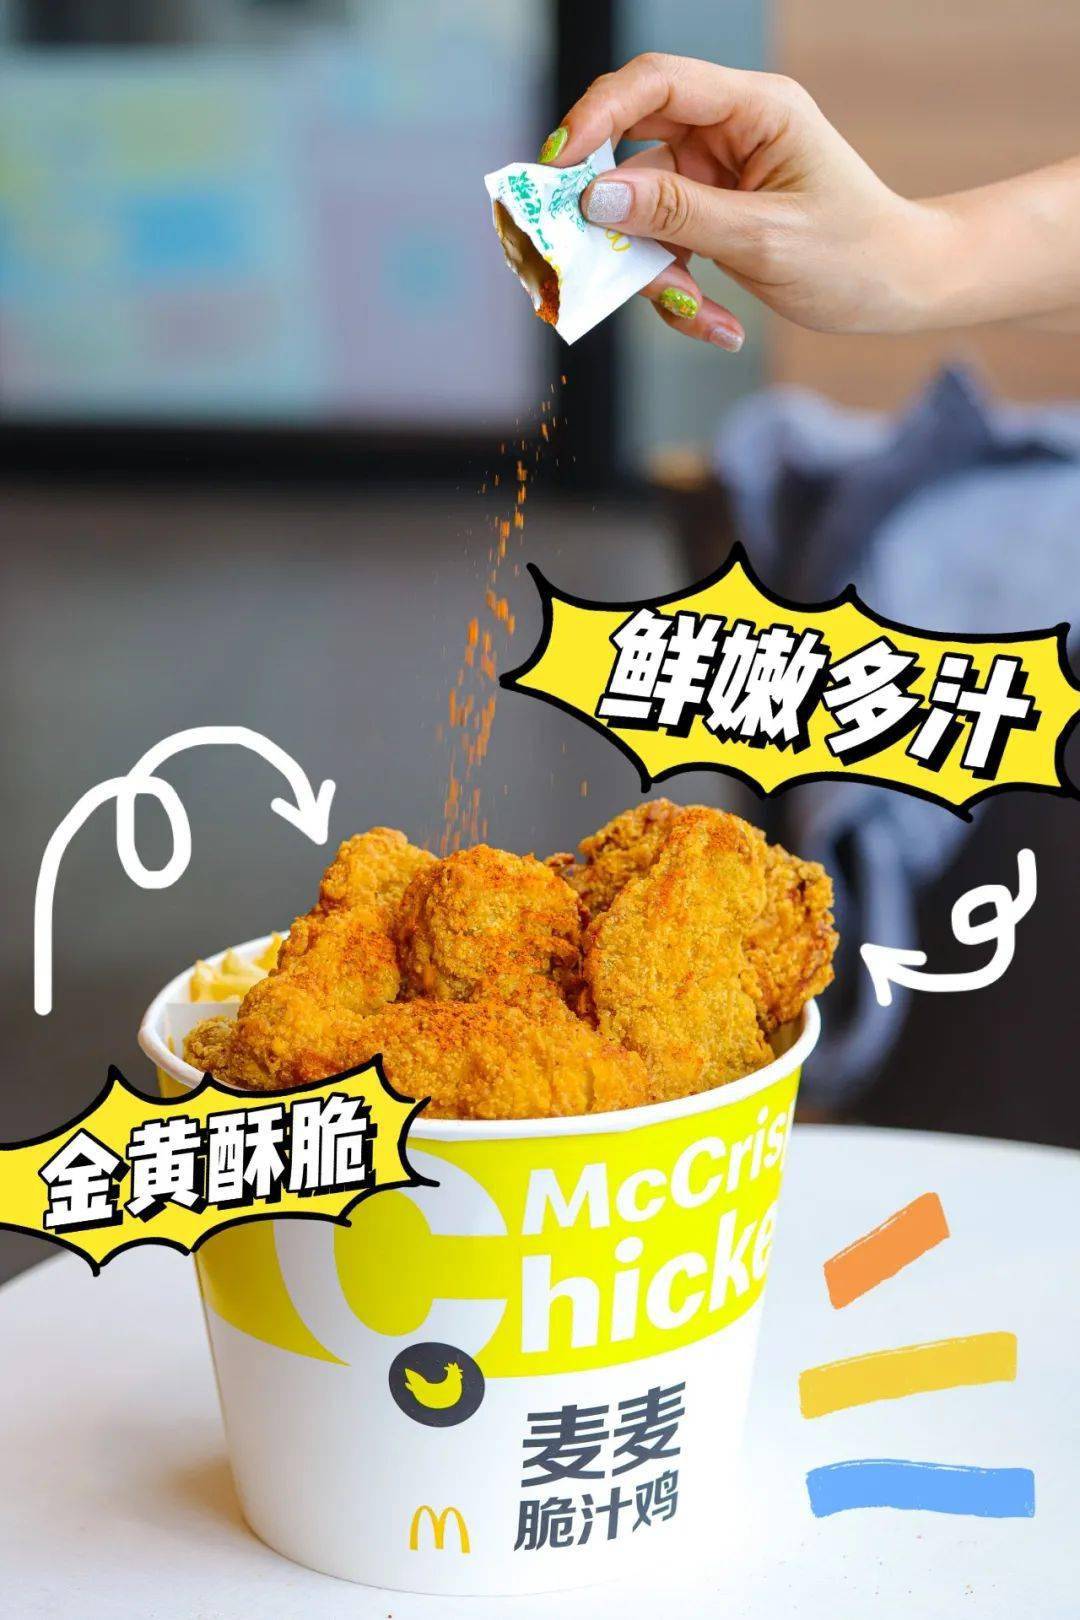 素素探店丨可口可乐云饭局x麦麦脆汁鸡上线喊你免费吃炸鸡